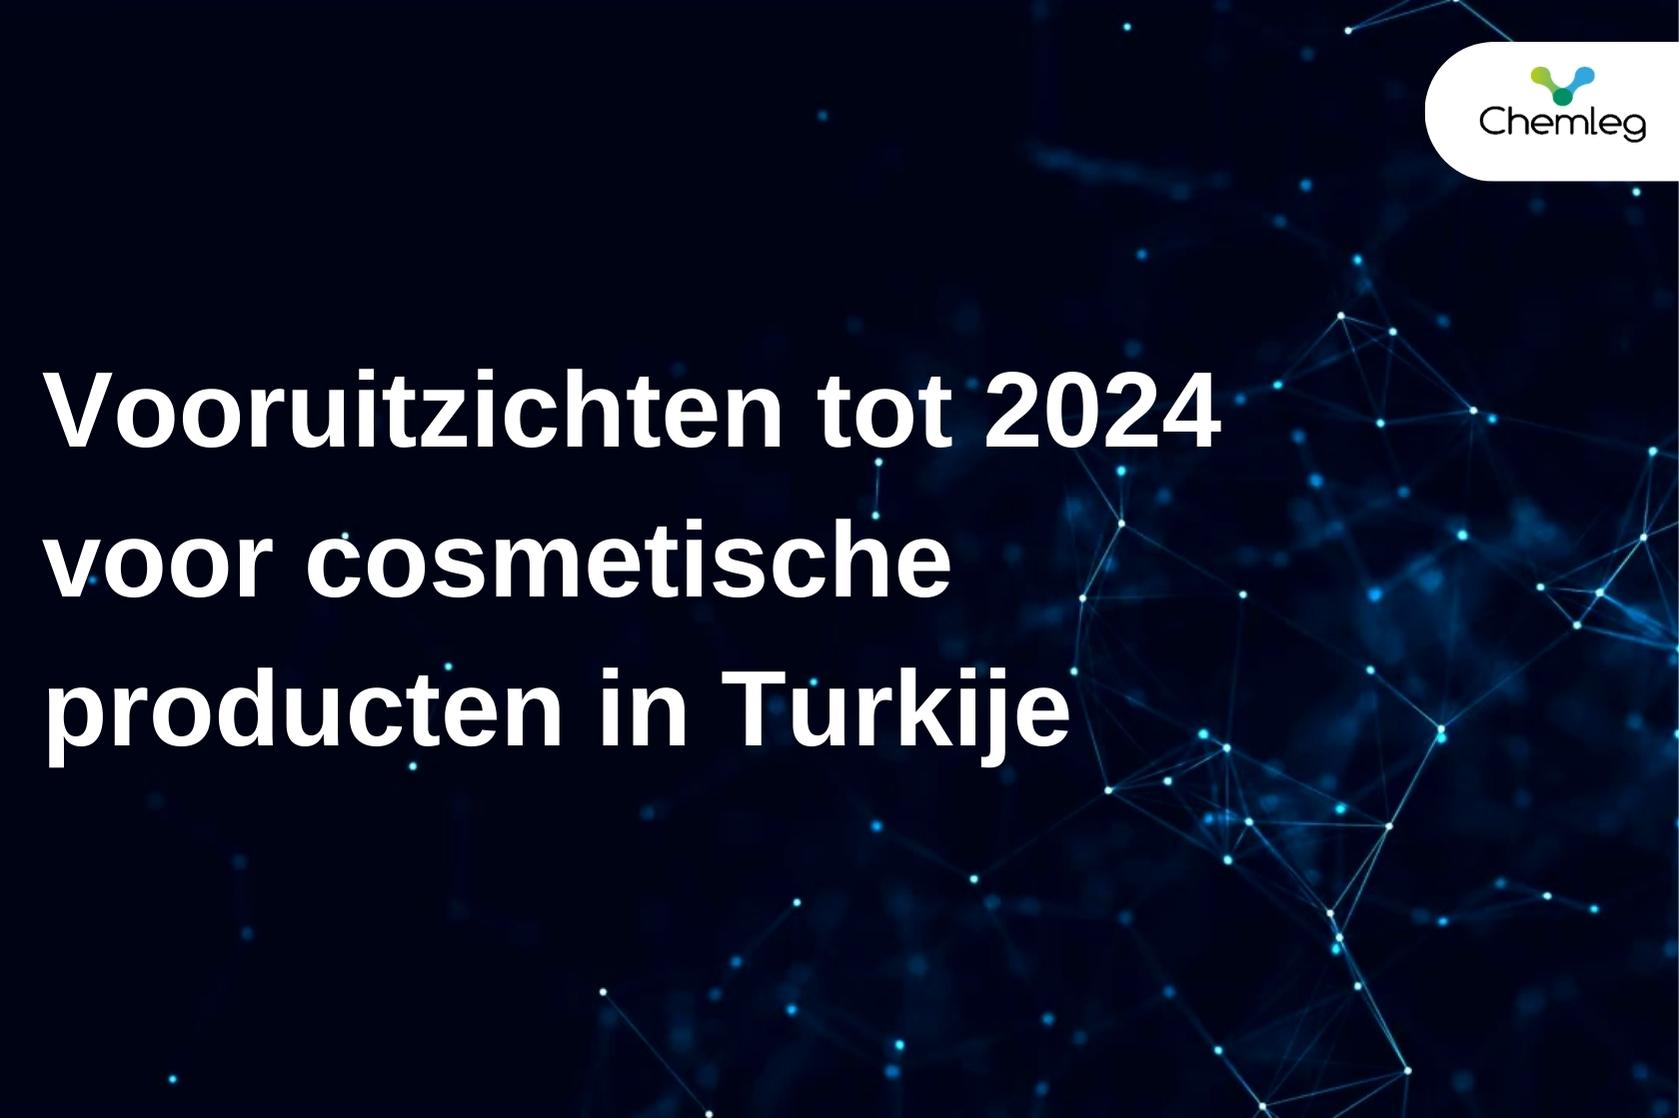 Vooruitzichten tot 2024 voor cosmetische producten in Turkije